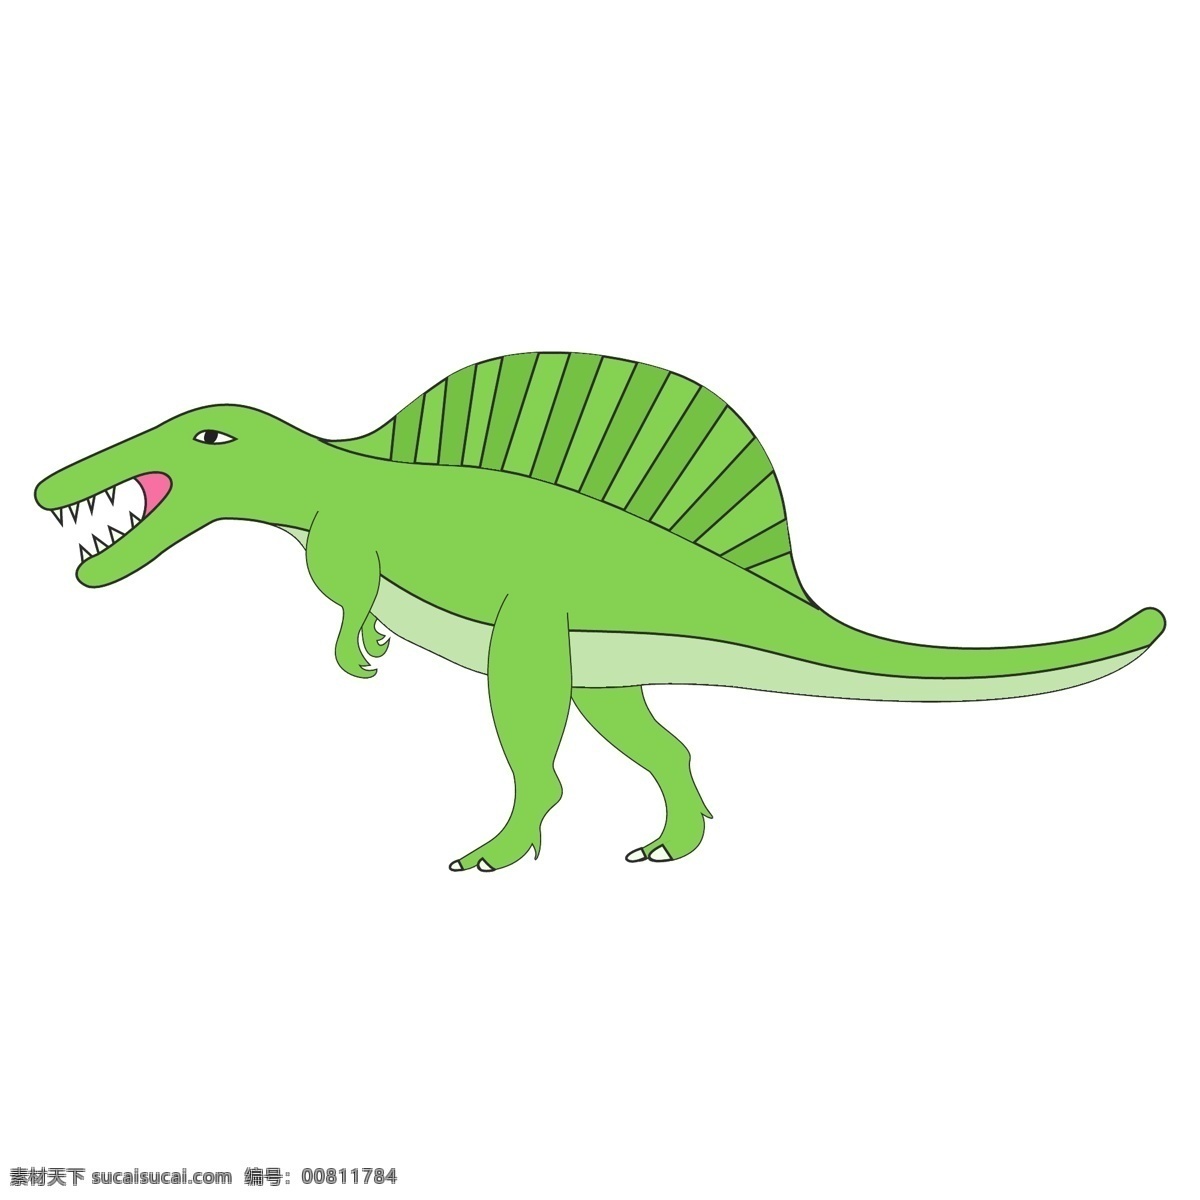 卡通 绿色 恐龙 插画 恐龙卡通形象 恐龙形象 剑龙 恐龙世界 卡通可爱恐龙 绿色恐龙 可爱插画